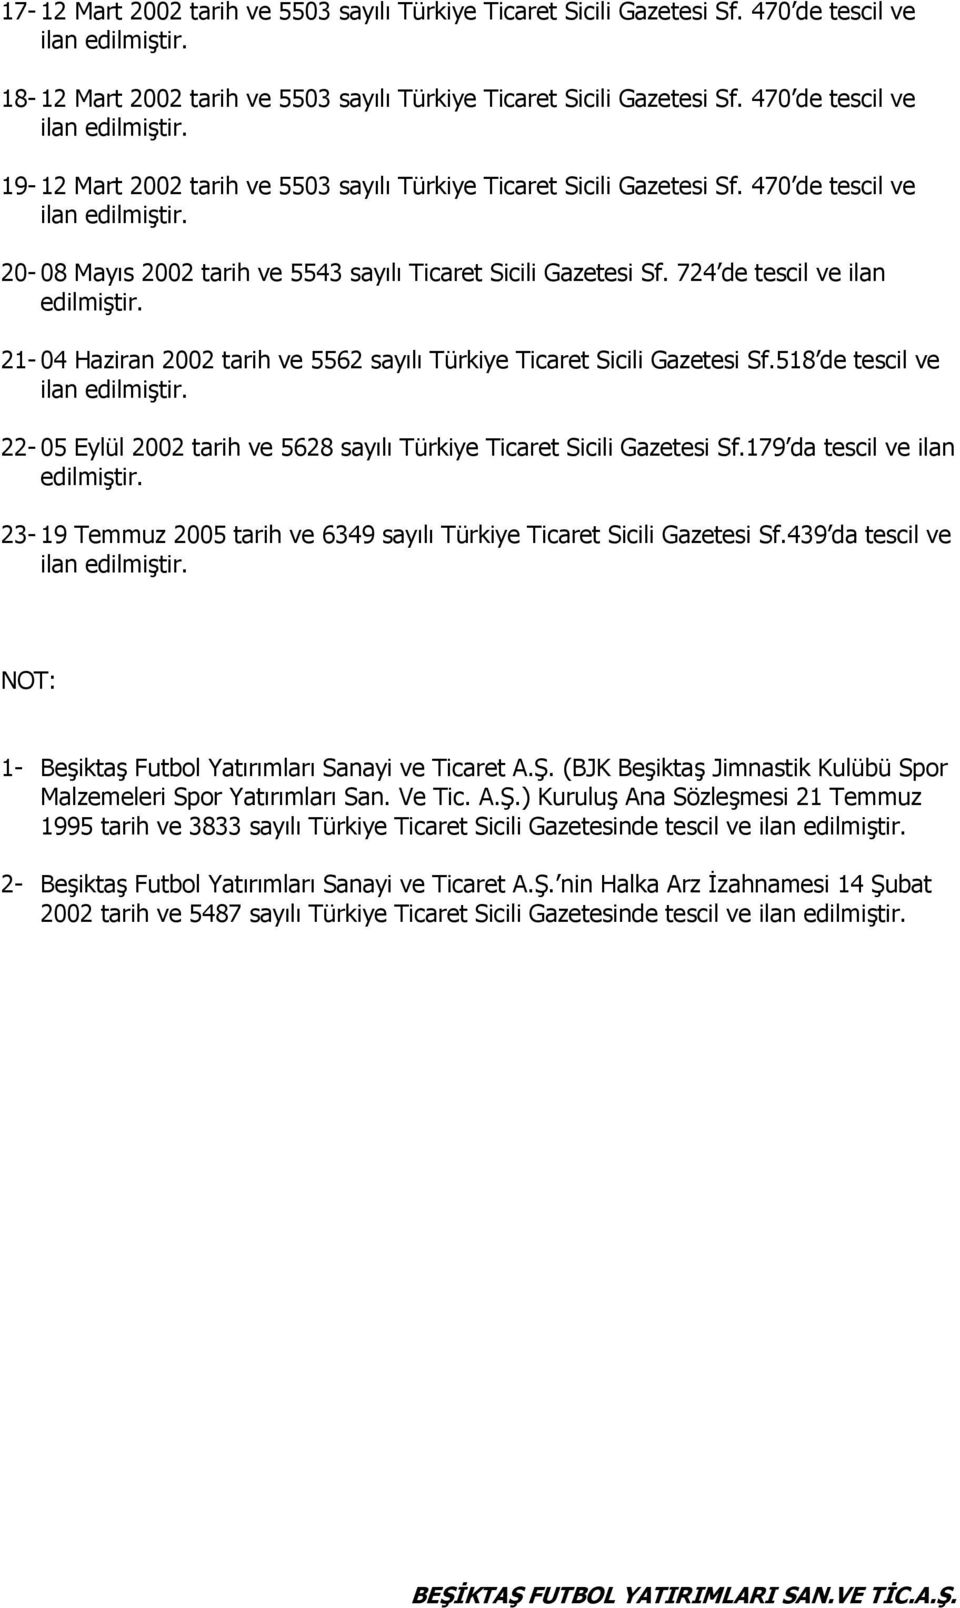 724 de tescil ve ilan edilmiştir. 21-04 Haziran 2002 tarih ve 5562 sayılı Türkiye Ticaret Sicili Gazetesi Sf.518 de tescil ve 22-05 Eylül 2002 tarih ve 5628 sayılı Türkiye Ticaret Sicili Gazetesi Sf.